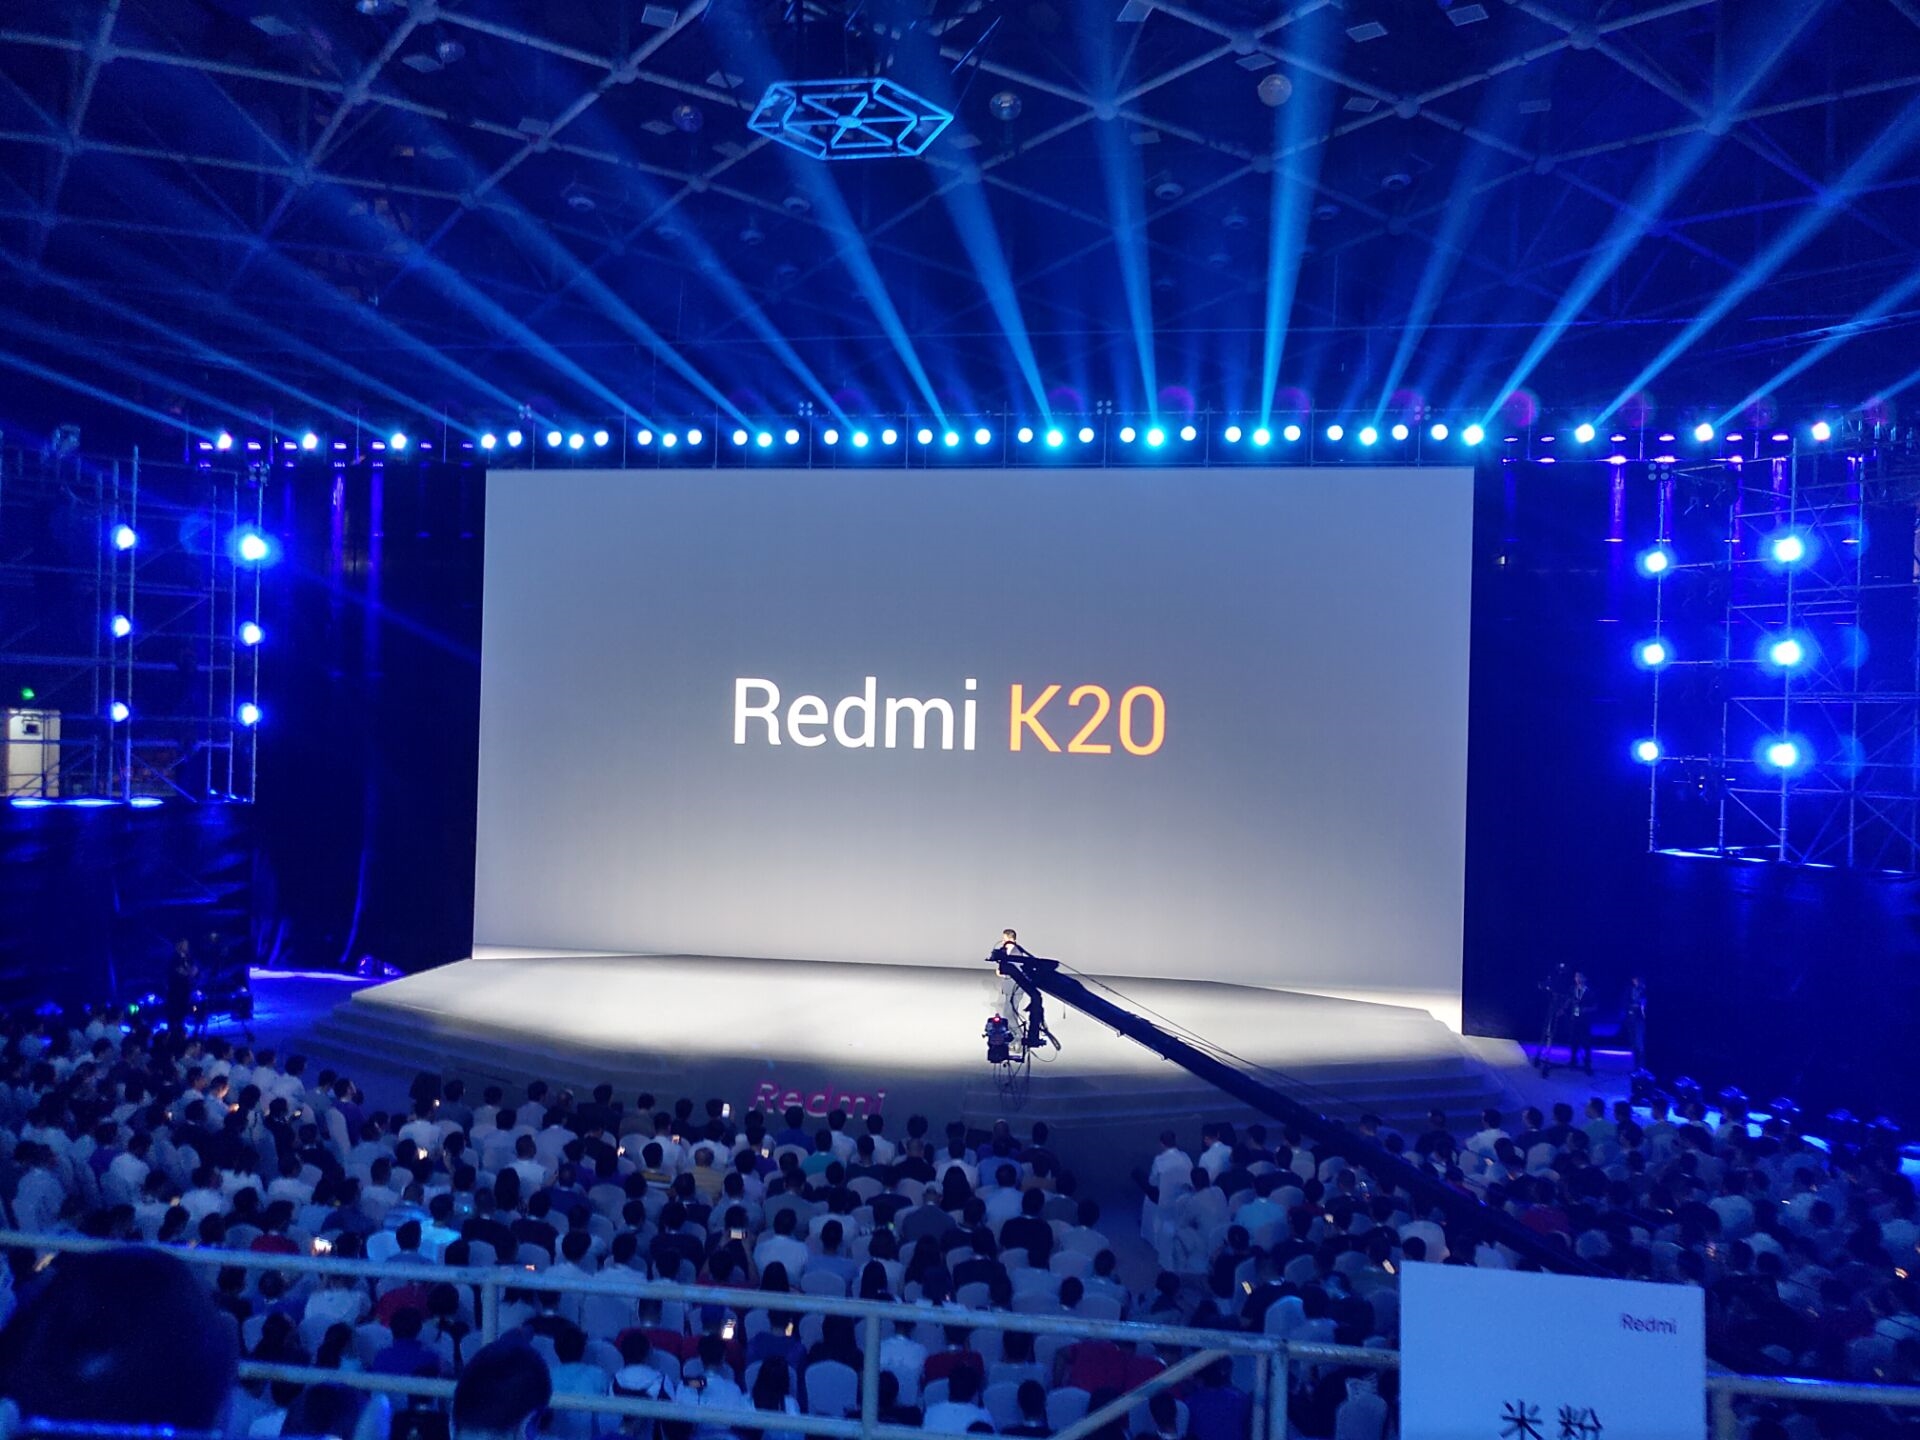 Redmi K20/K20 Pro
chính thức trình làng: Snapdragon 730/855, vân tay trong màn
hình, camera thò thụt, giá rất rẻ